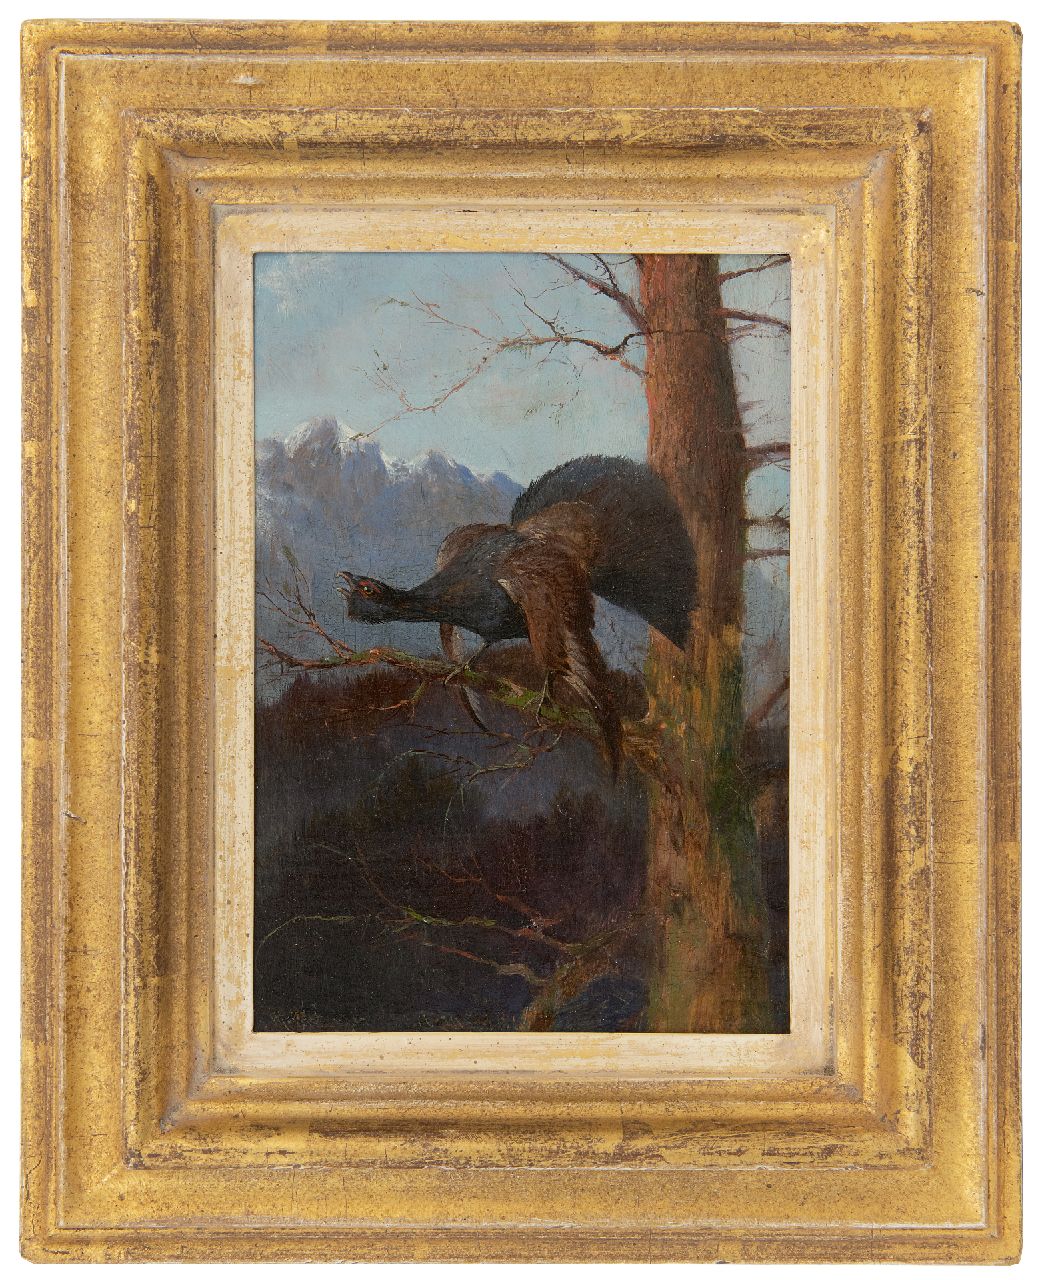 Hänger M.  | Max Hänger | Schilderijen te koop aangeboden | Auerhaan naar links kijkend   (uit een paar), olieverf op paneel 19,2 x 13,2 cm, gesigneerd linksonder